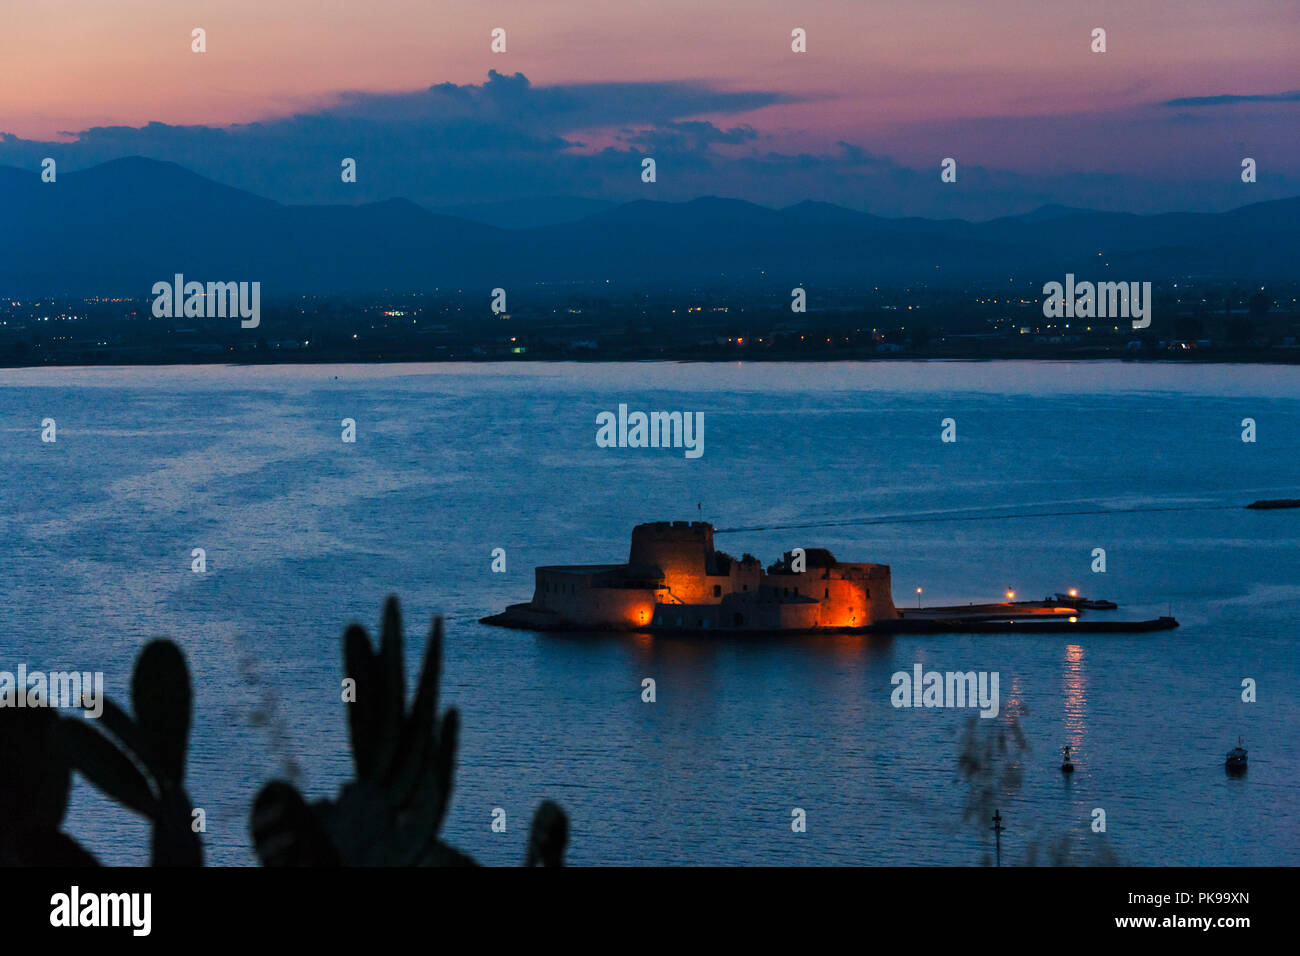 Night view of Bourtzi Castle in the Aegean Sea, Nafplio, Greece Stock Photo